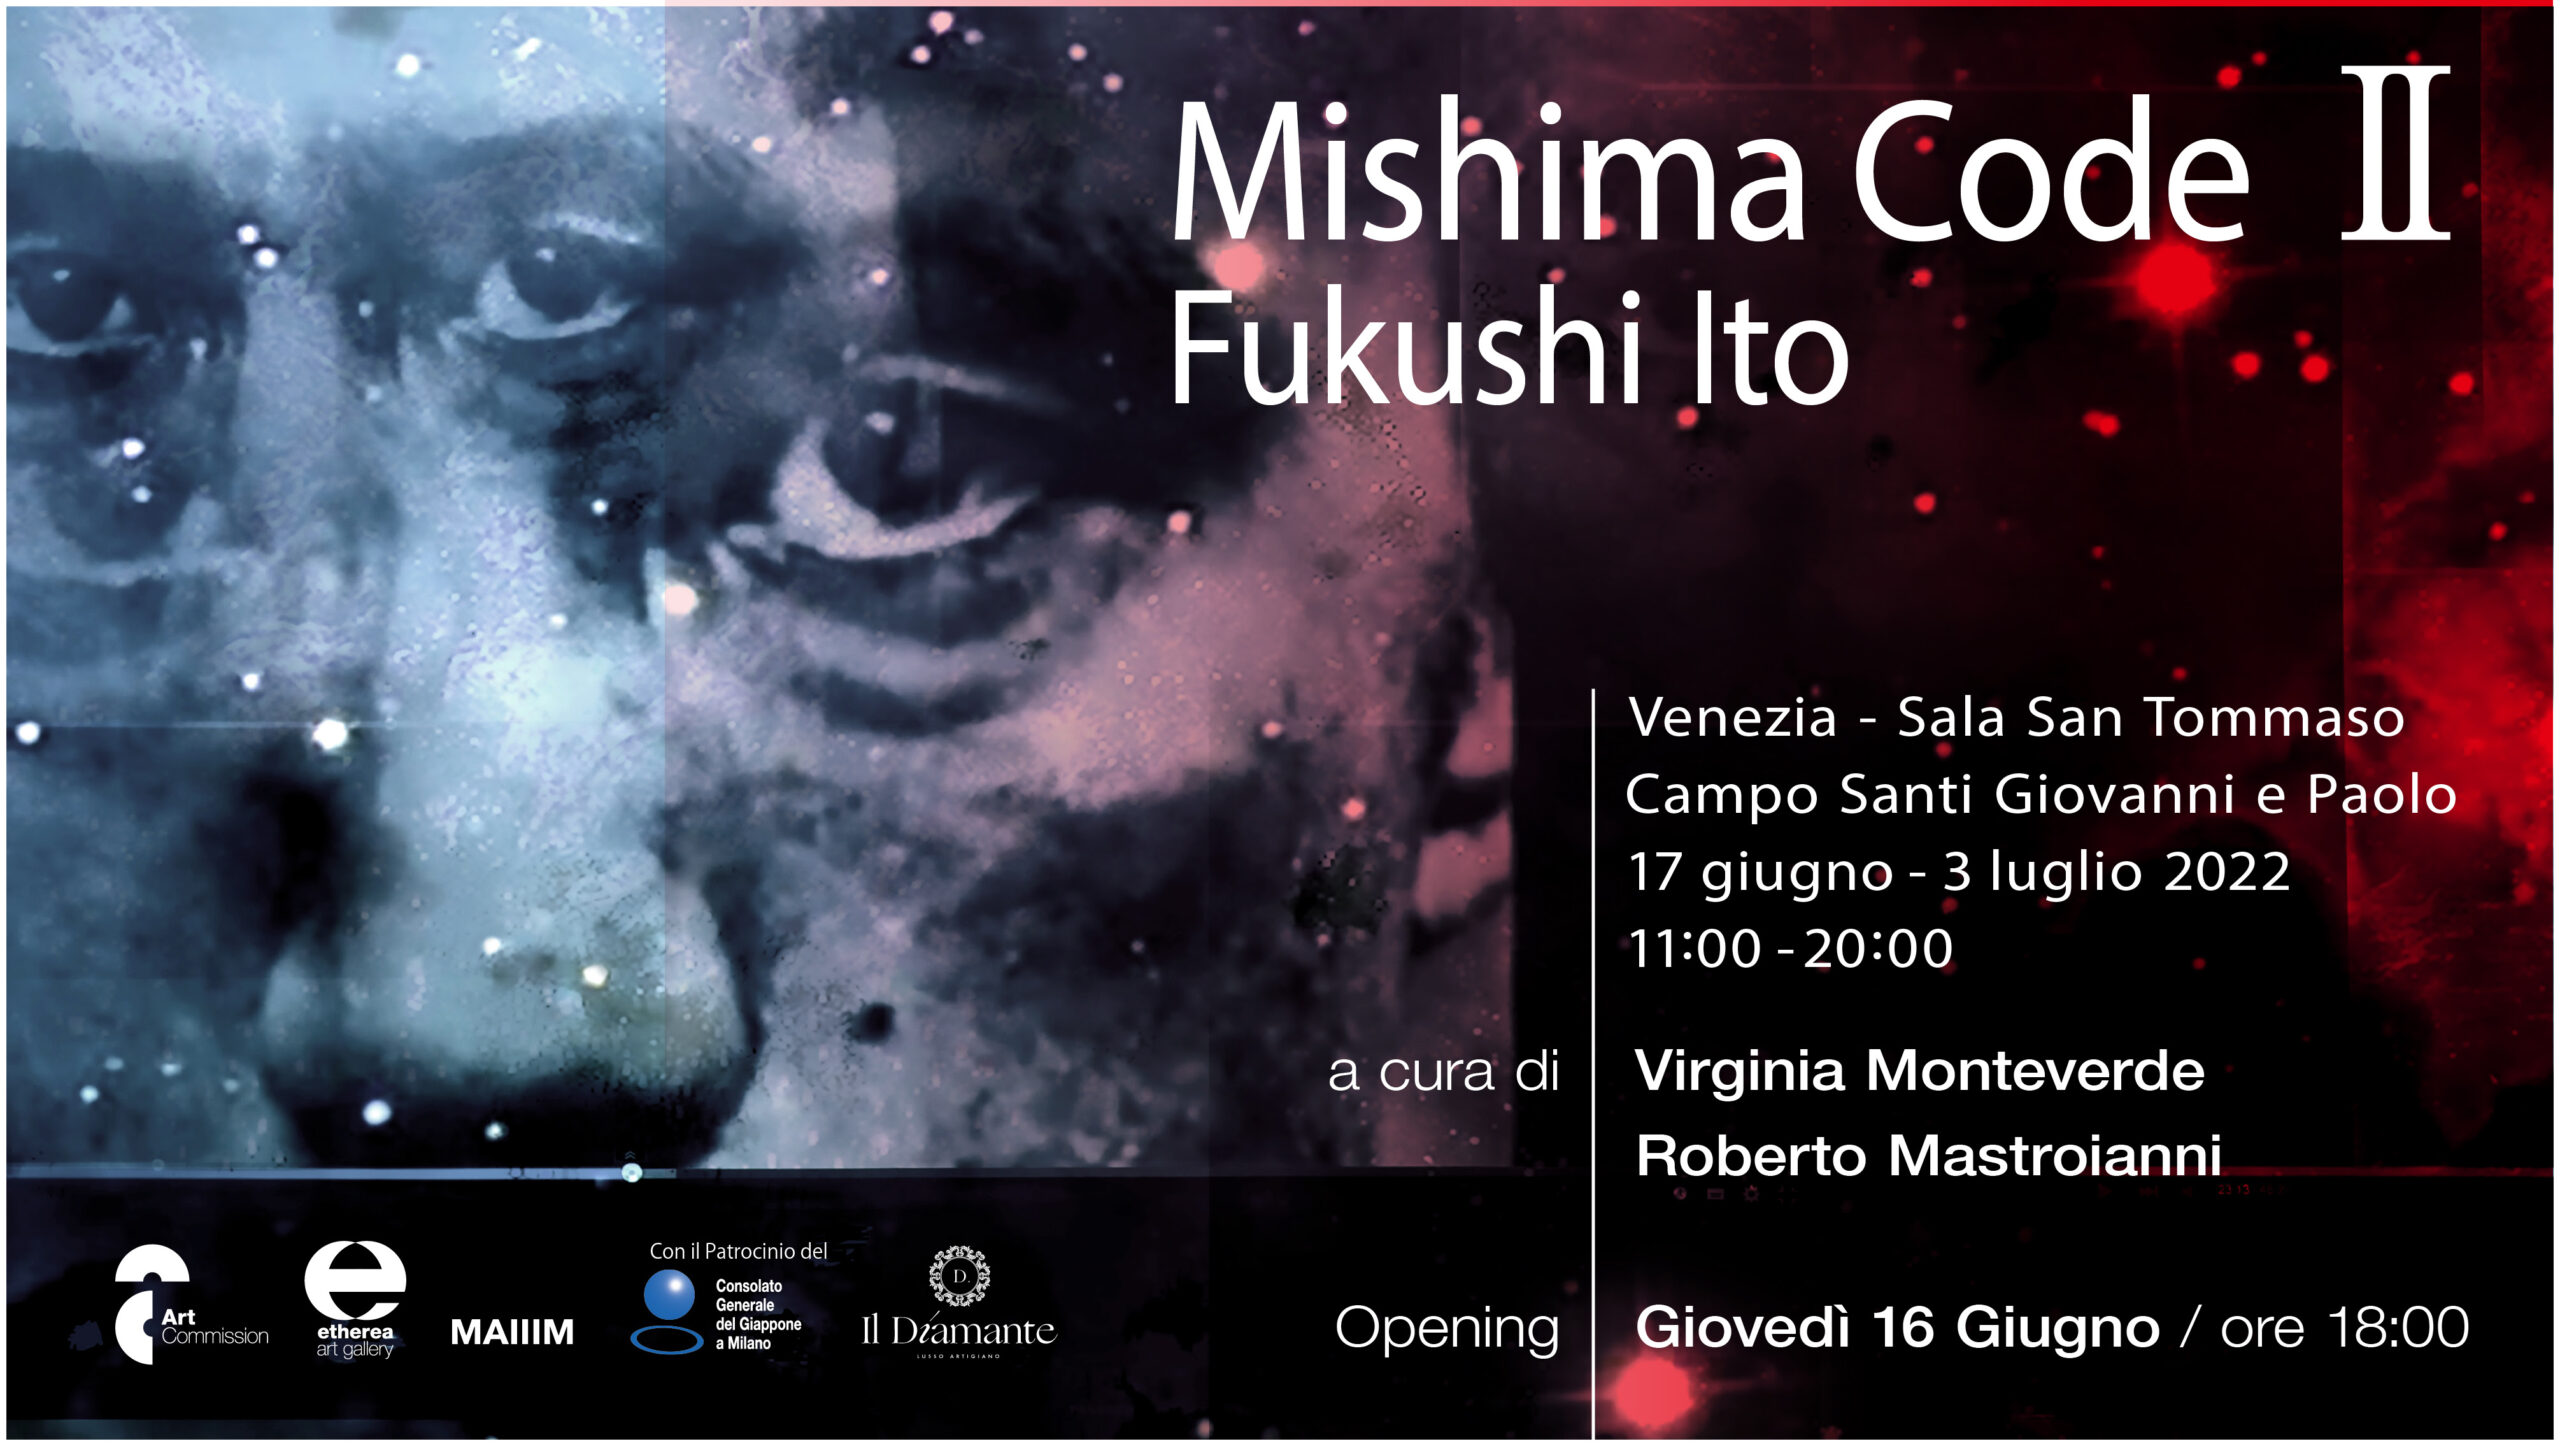 Fukushi Ito – Mishima Code II